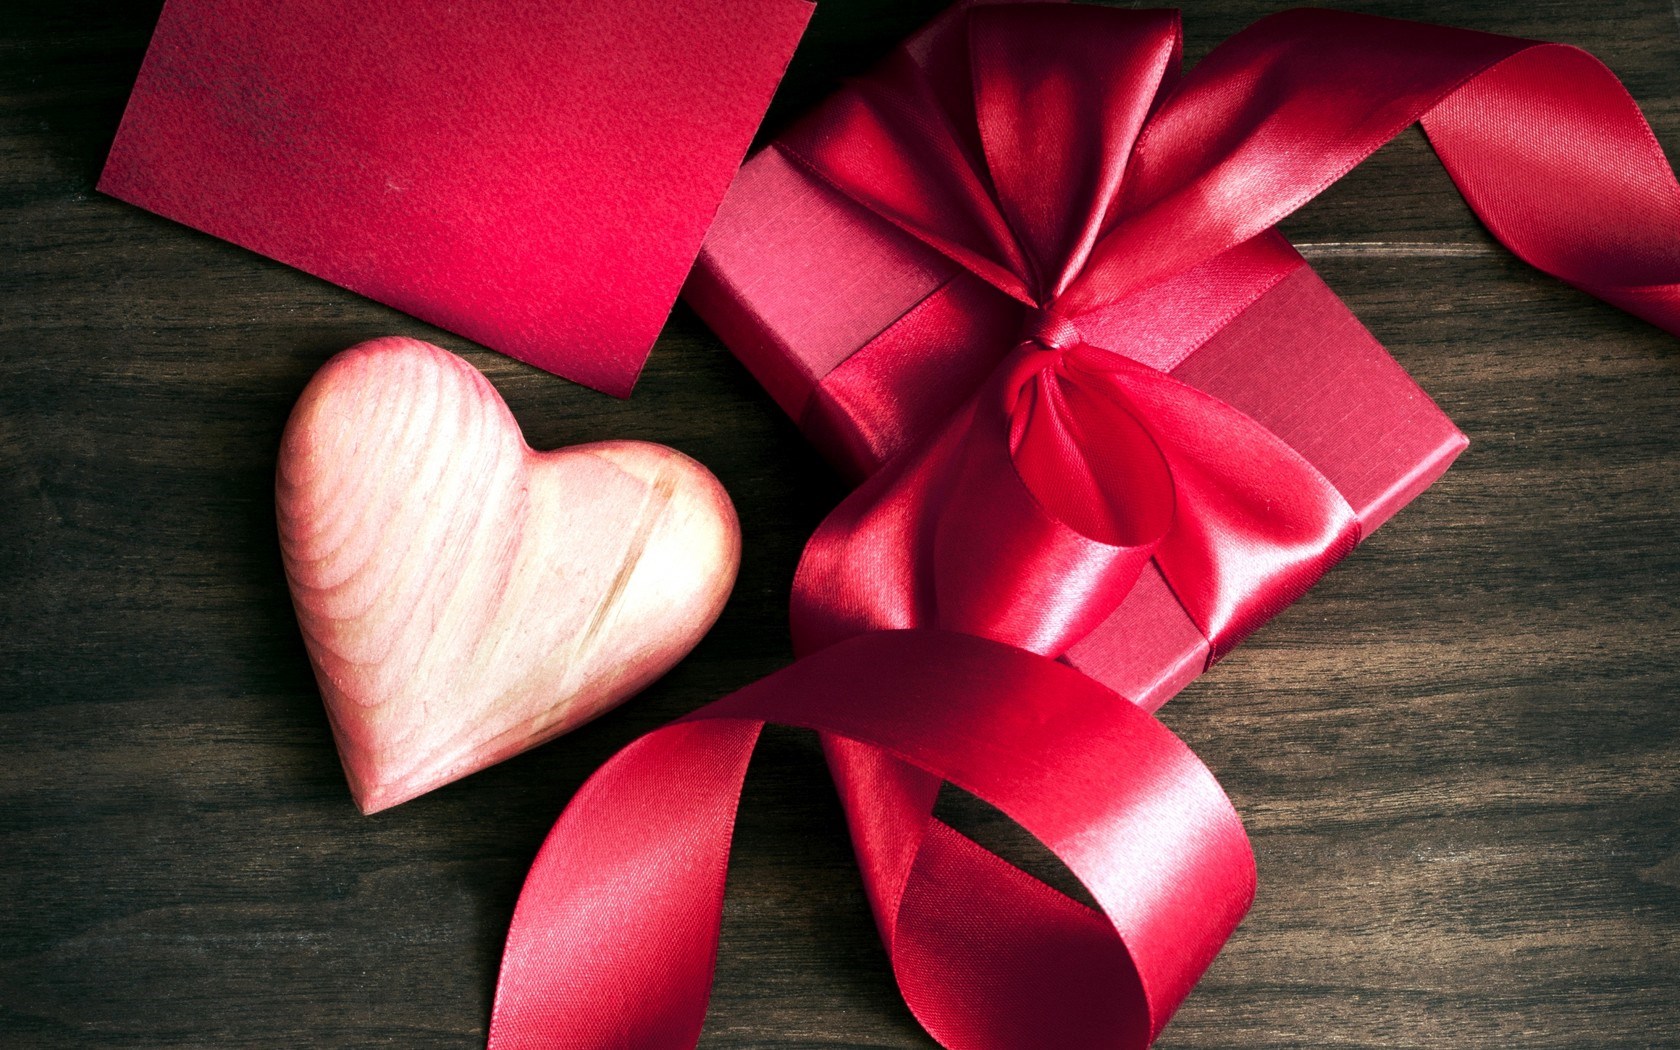 Ý nghĩa và những lời chúc ngọt ngào gửi đến nàng nhân ngày Valentine Trắng 14/3 năm nay-6